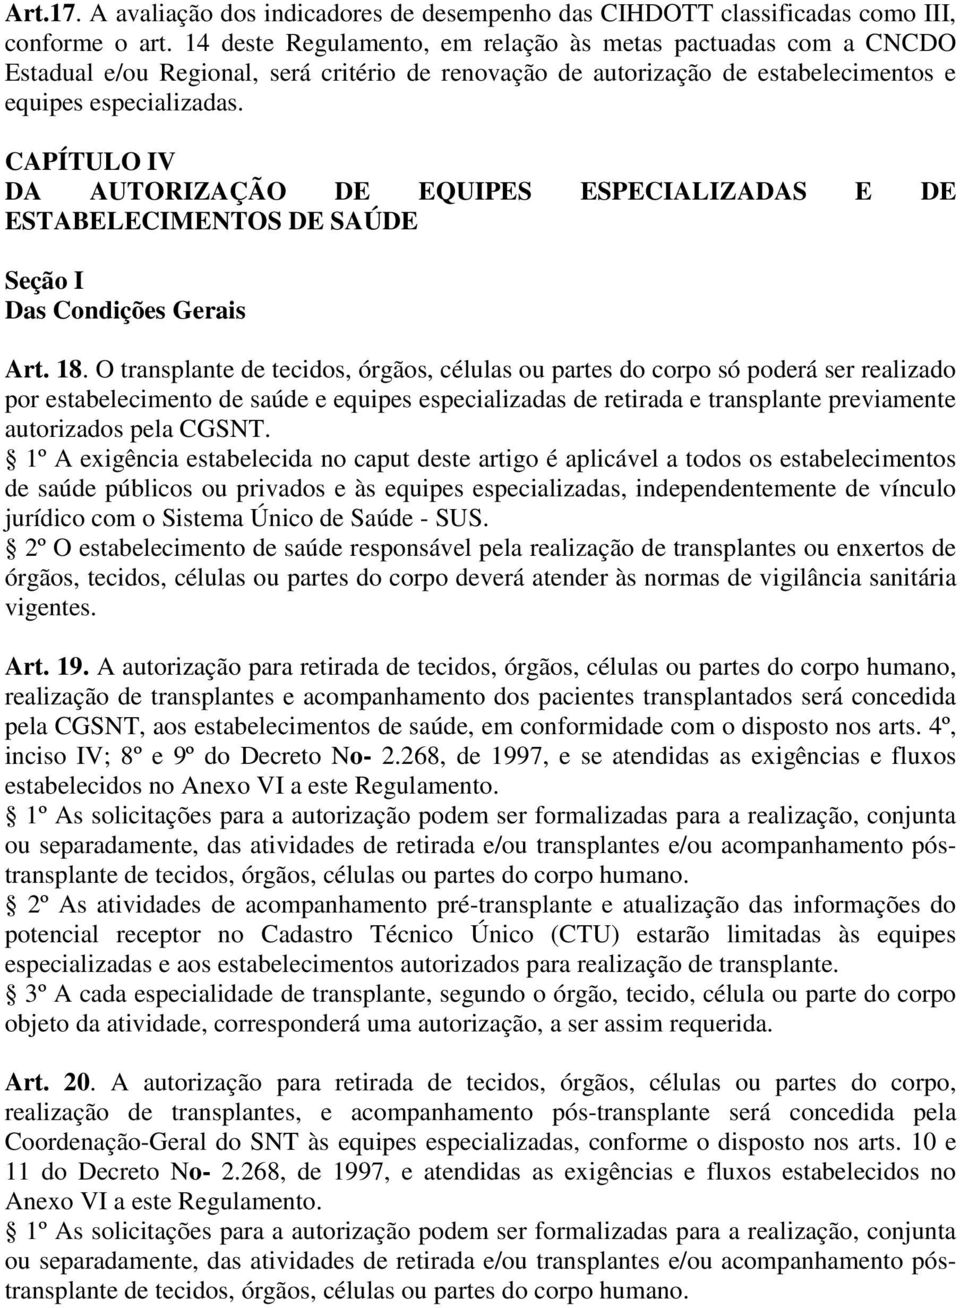 CAPÍTULO IV DA AUTORIZAÇÃO DE EQUIPES ESPECIALIZADAS E DE ESTABELECIMENTOS DE SAÚDE Seção I Das Condições Gerais Art. 18.